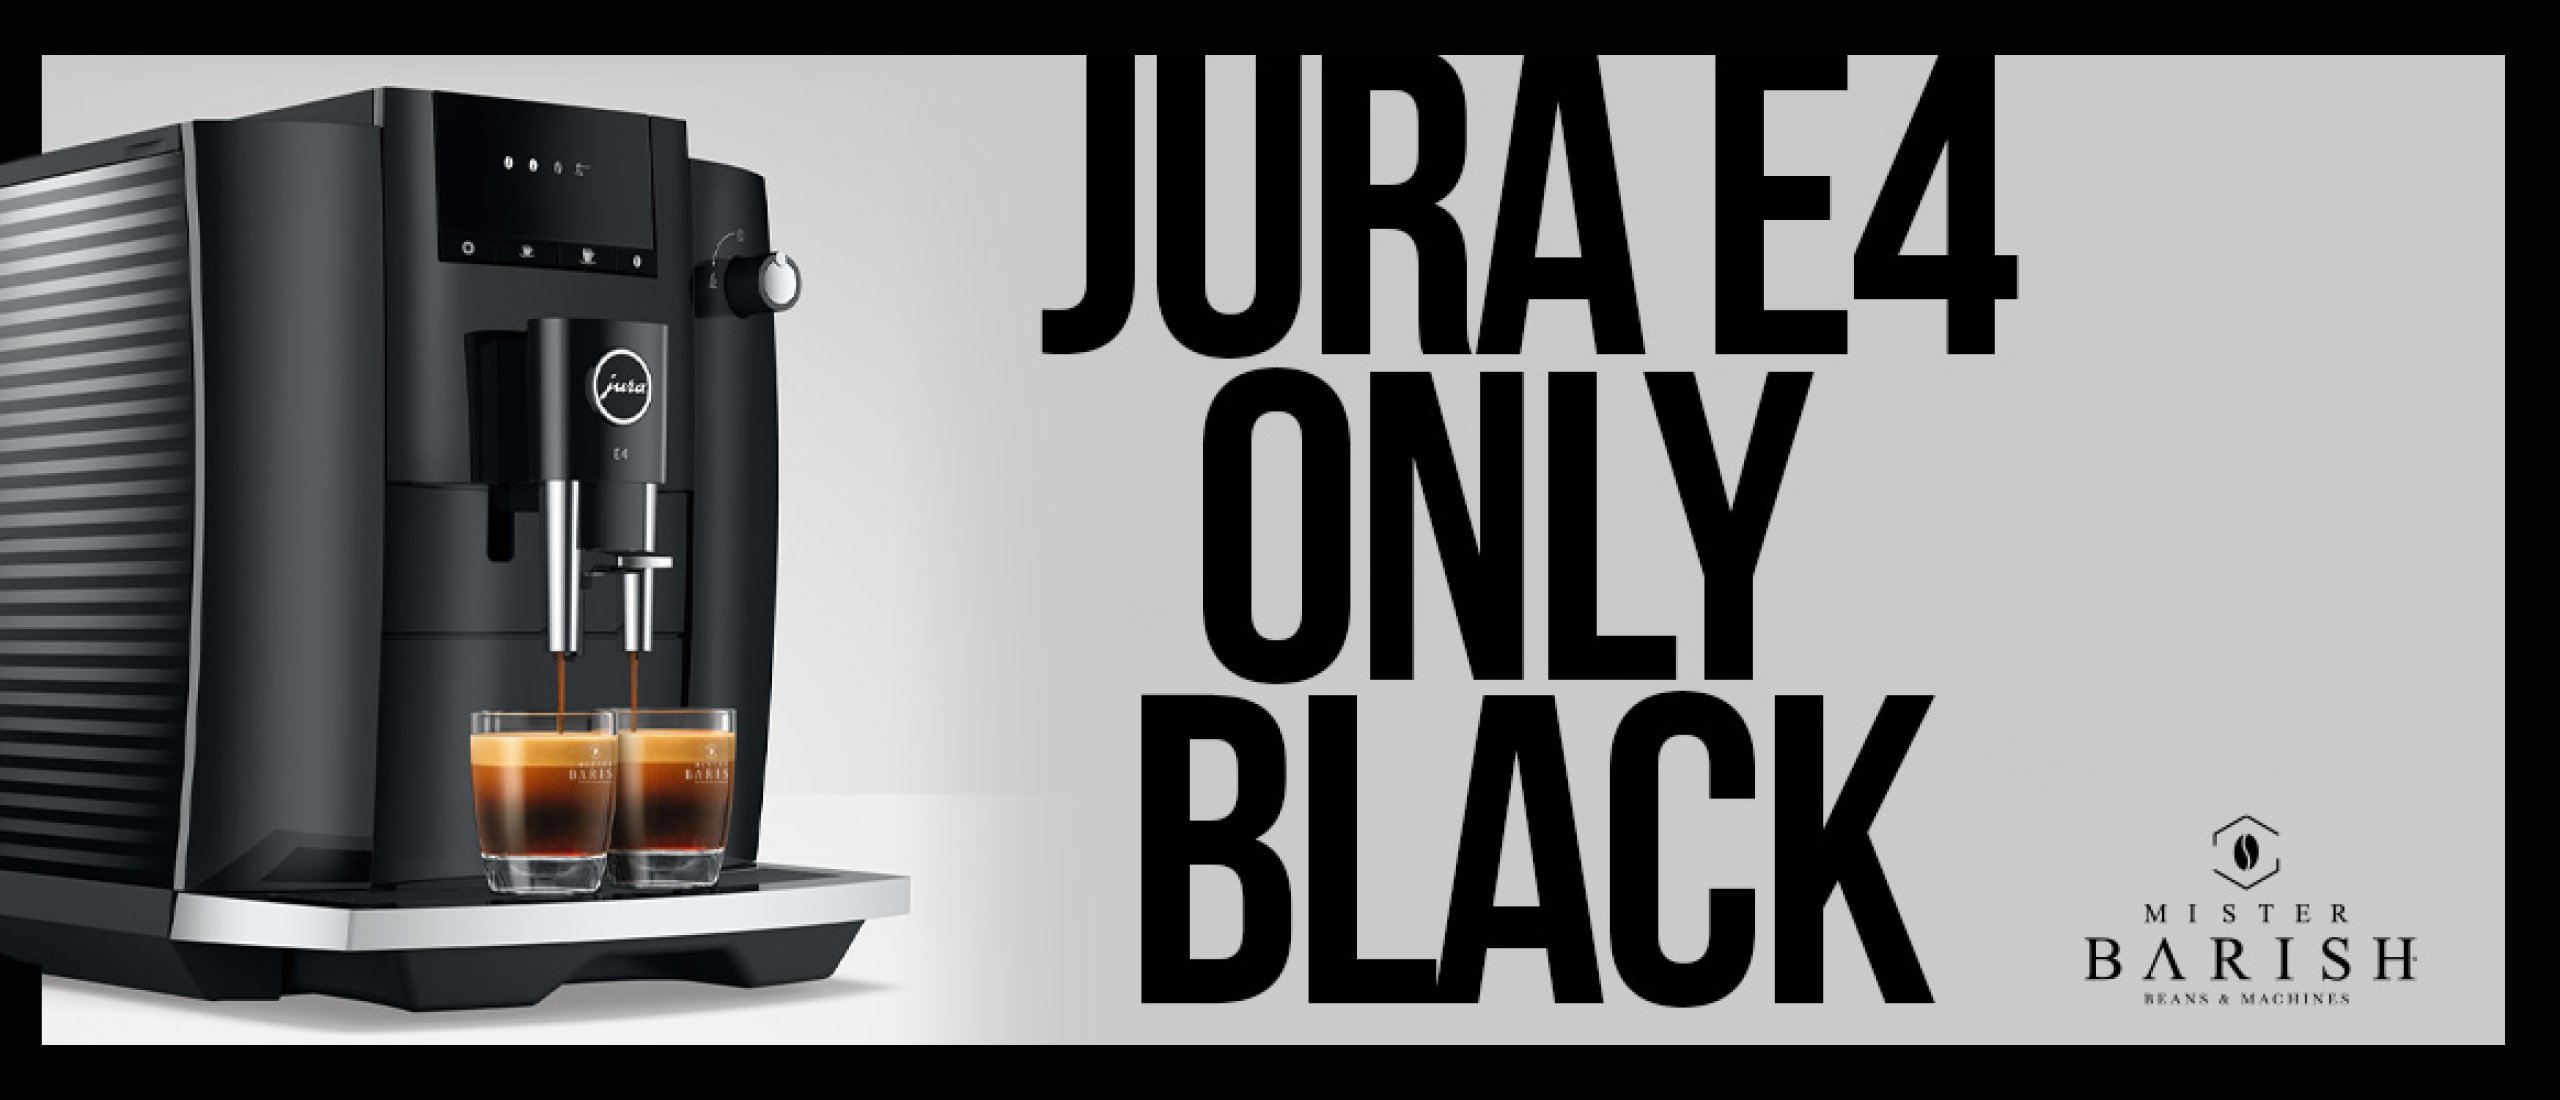 De Jura E4 is 100% koffie met de nieuwste technologie